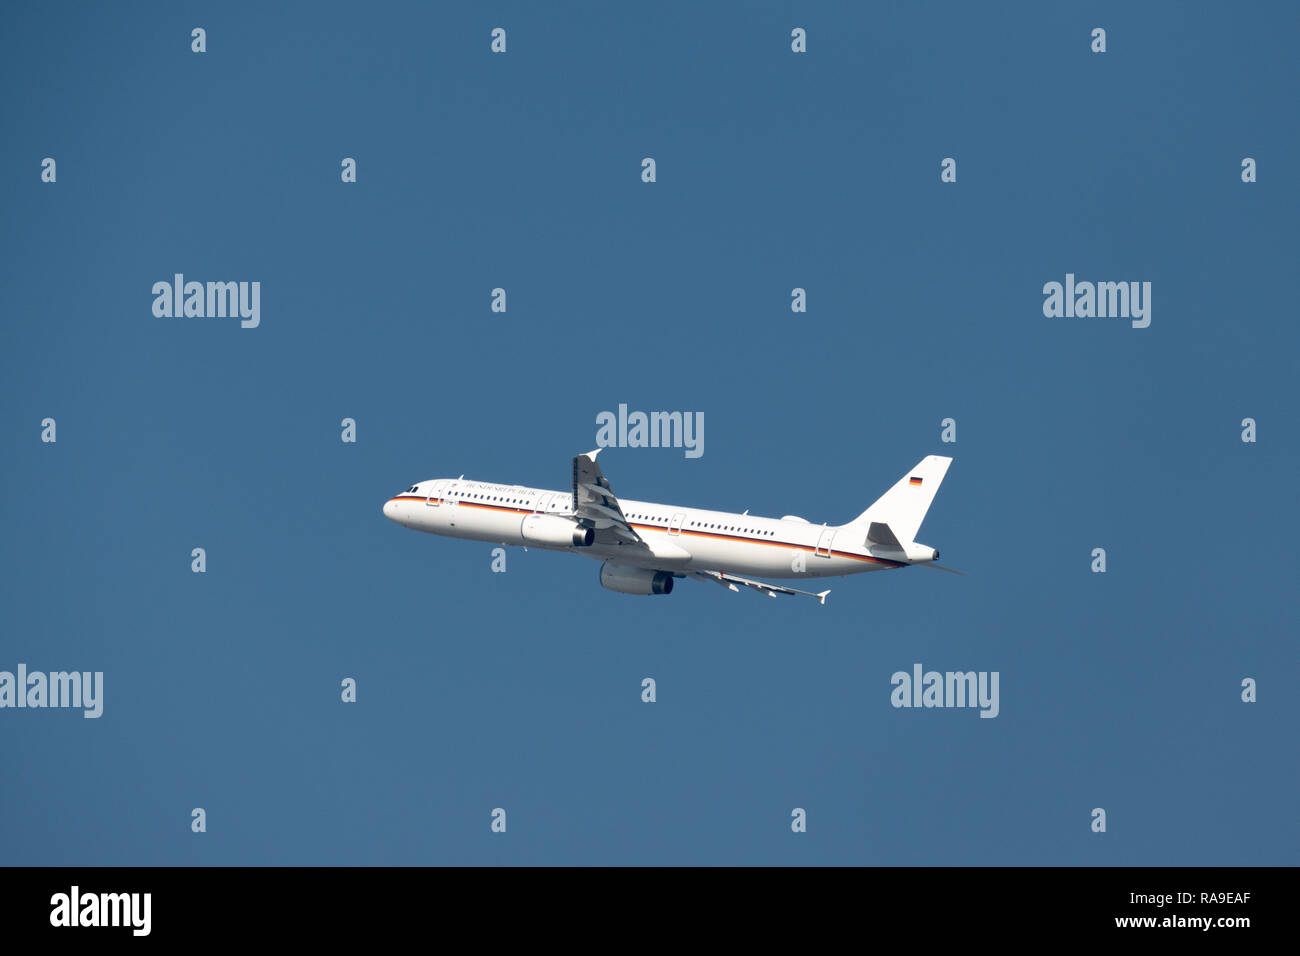 LEIPZIG, Germania - 17 ottobre 2018: German Airforce Airbus A321-231 98+10 togliere all'aeroporto Leipzig-Halle contro il cielo blu Foto Stock